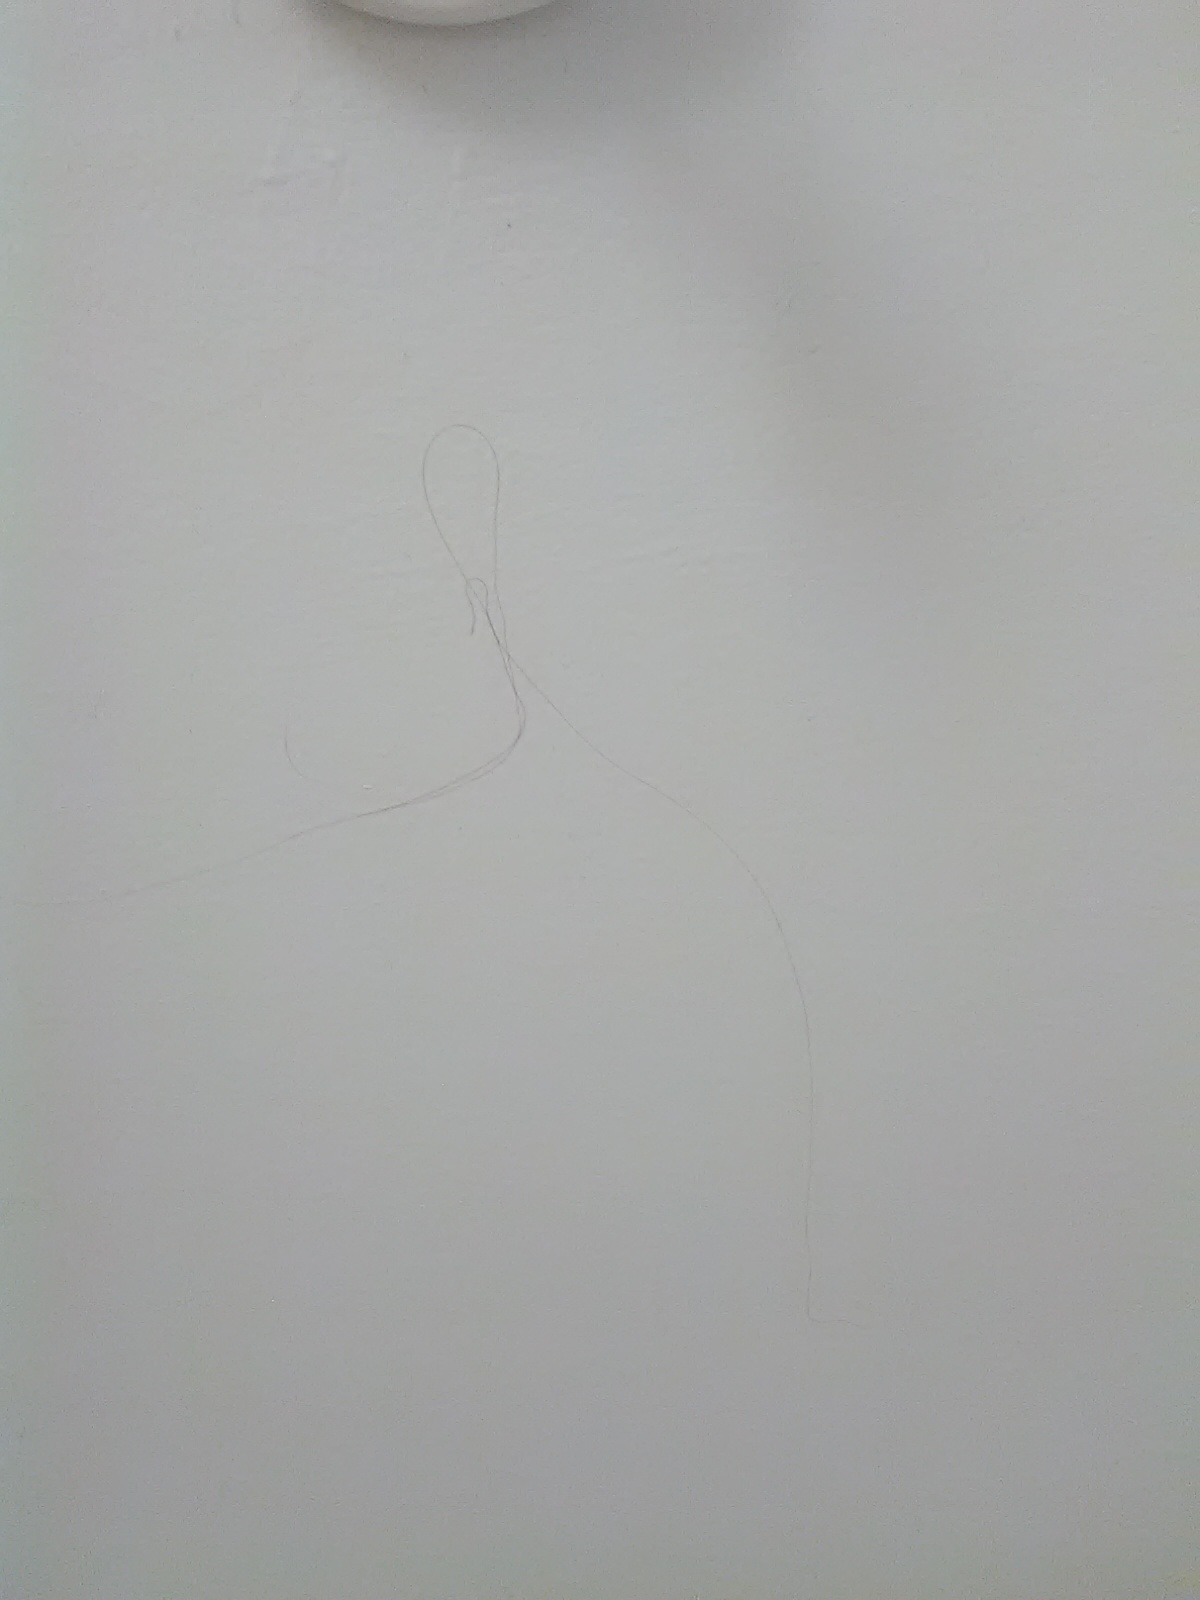 Hair on bathroom ceiling